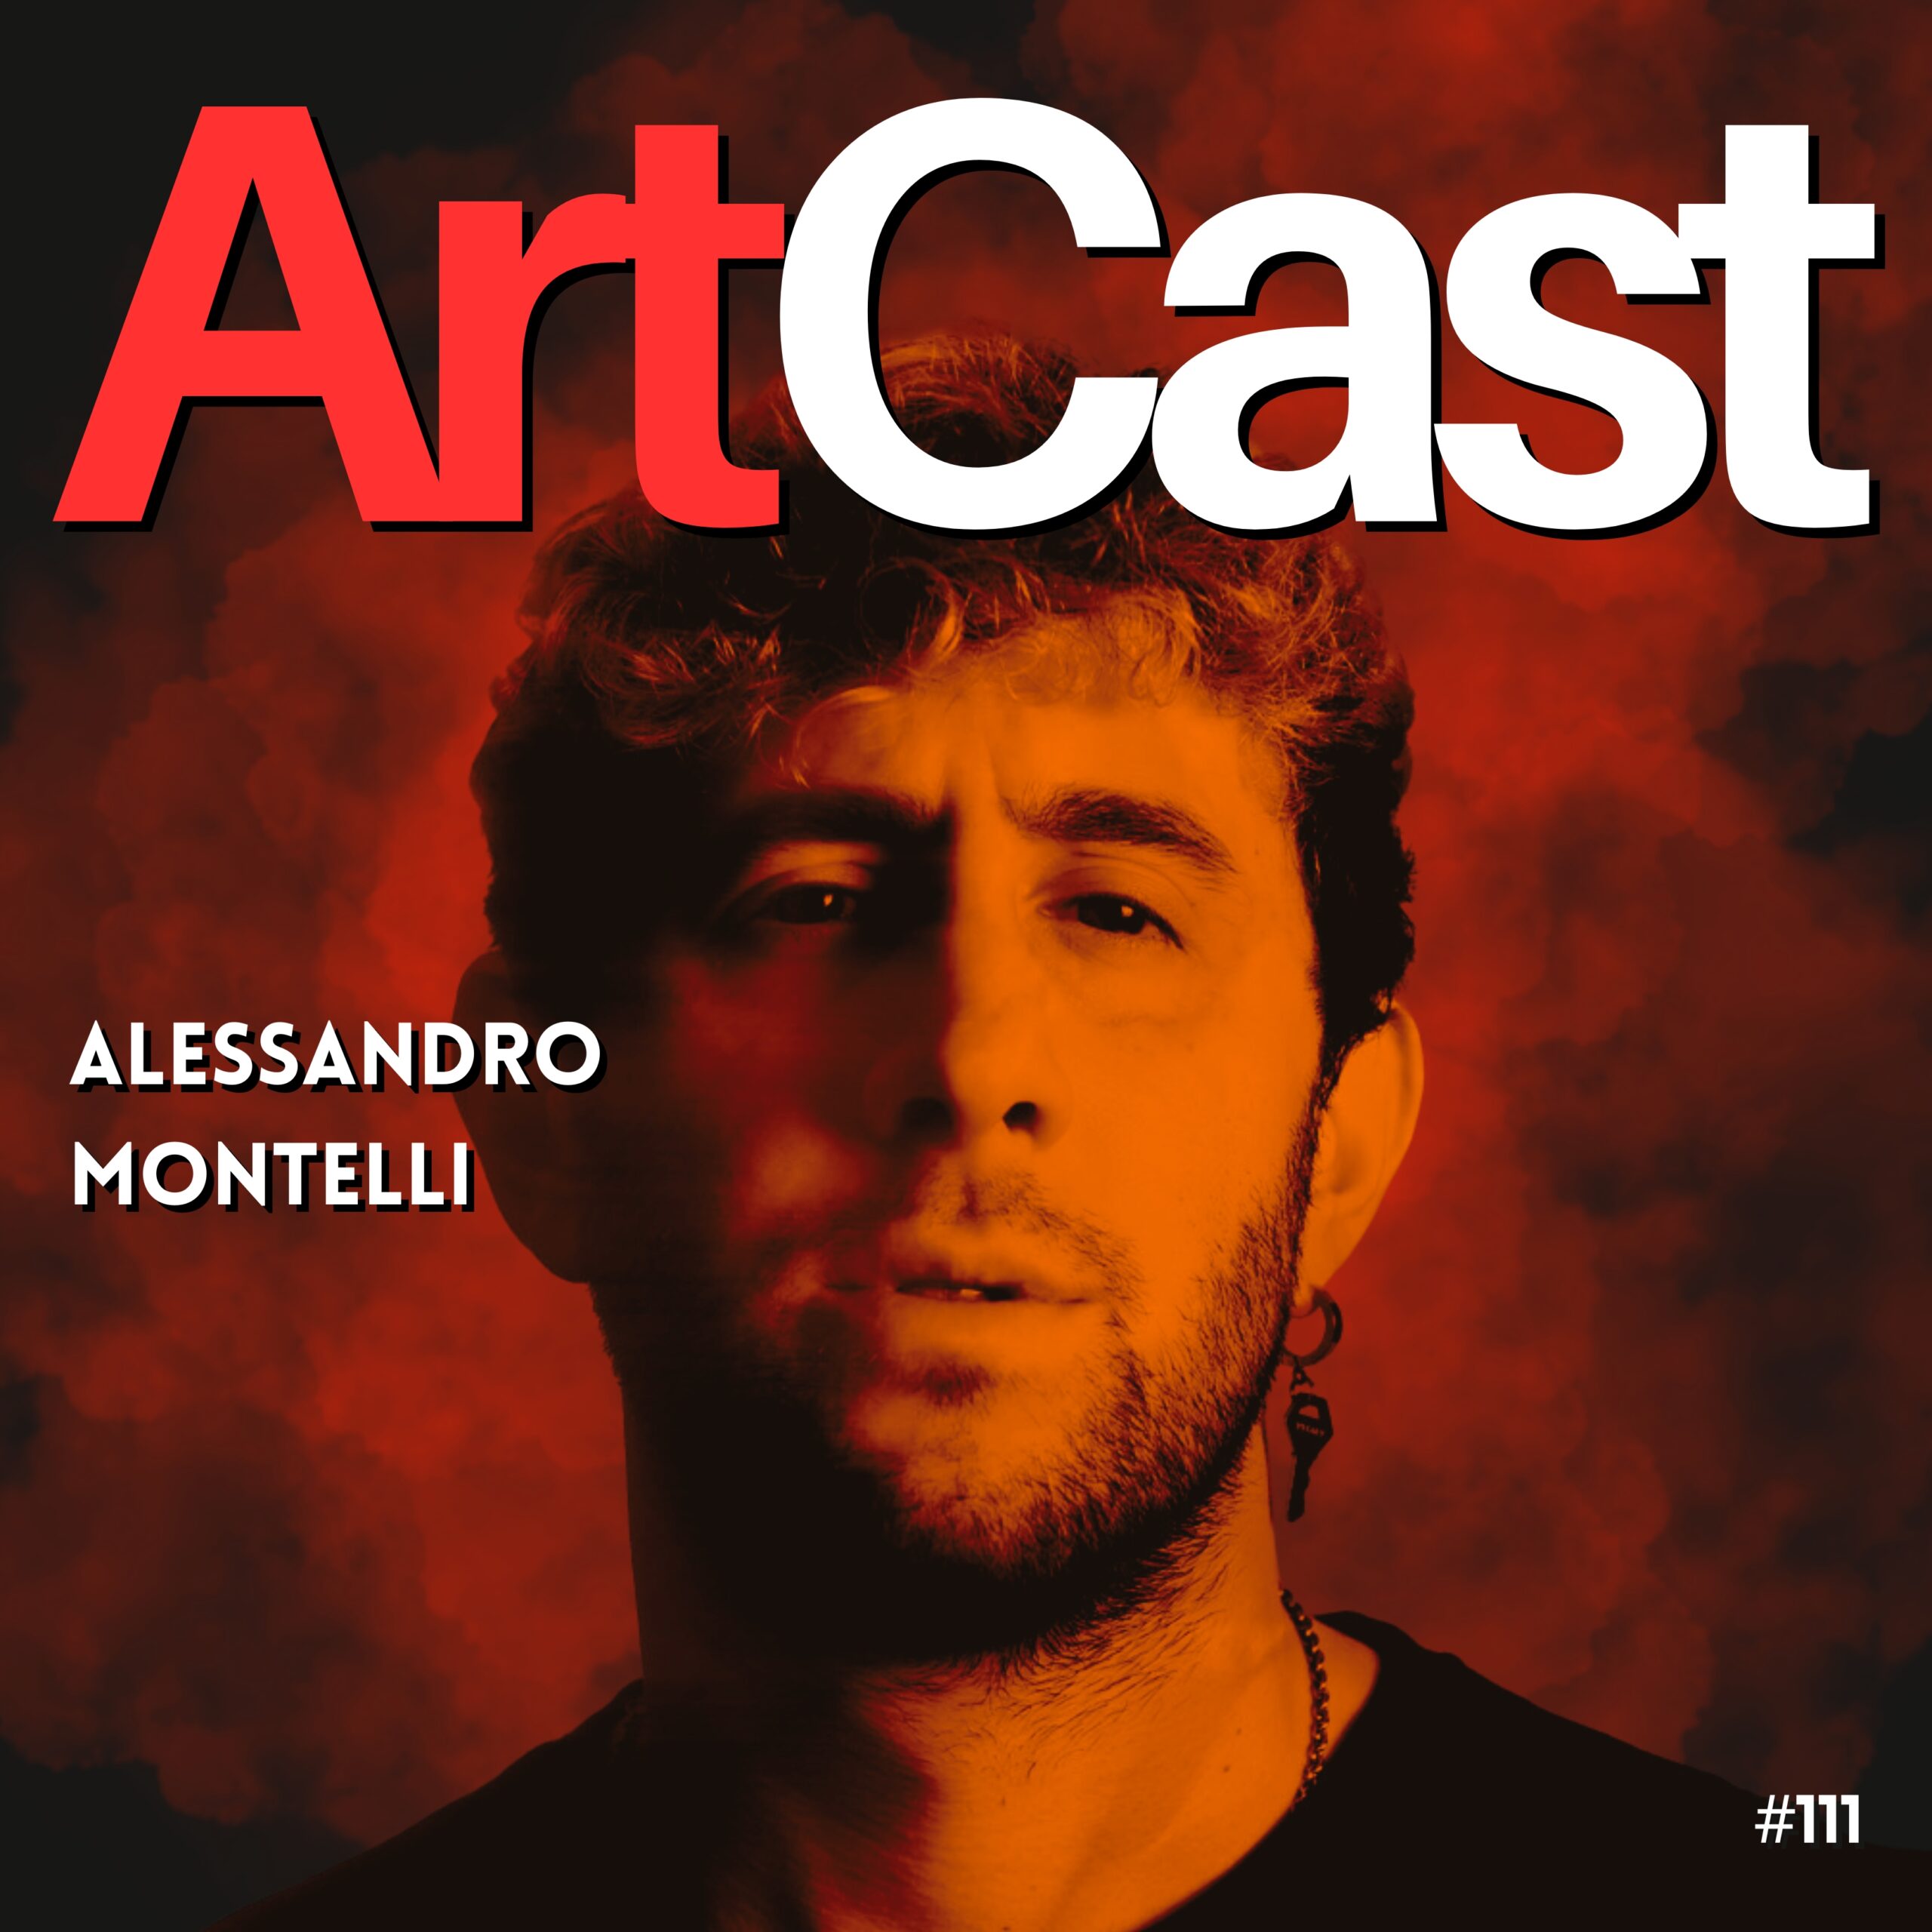 ALESSANDRO MONTELLI